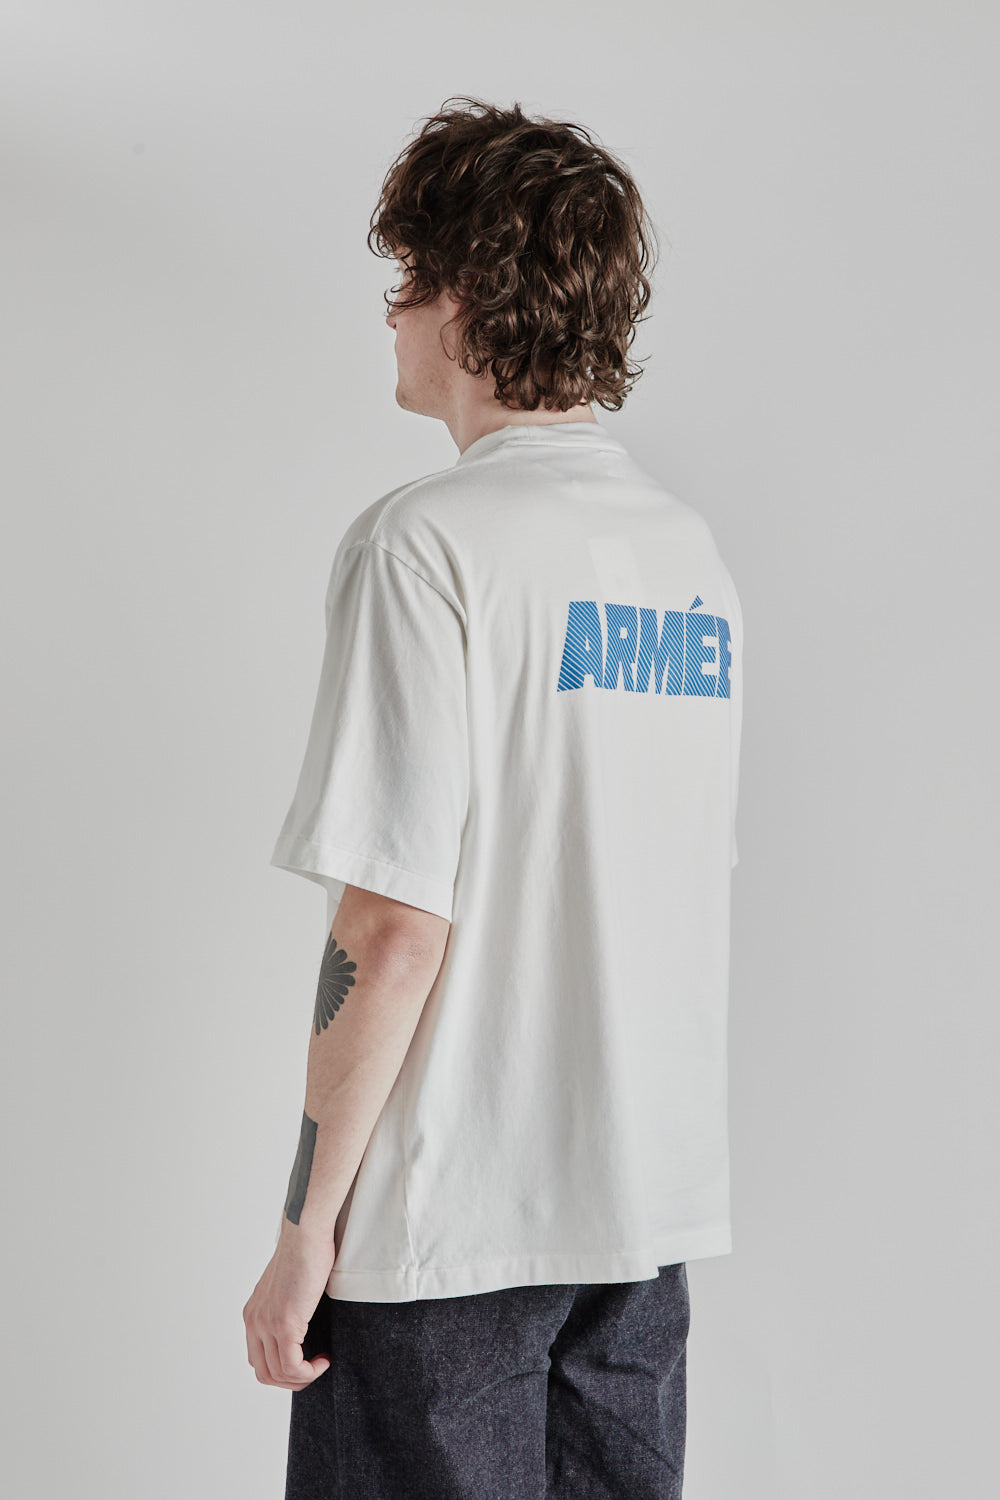 ARMÉE Print Wide Tee - White/Blue